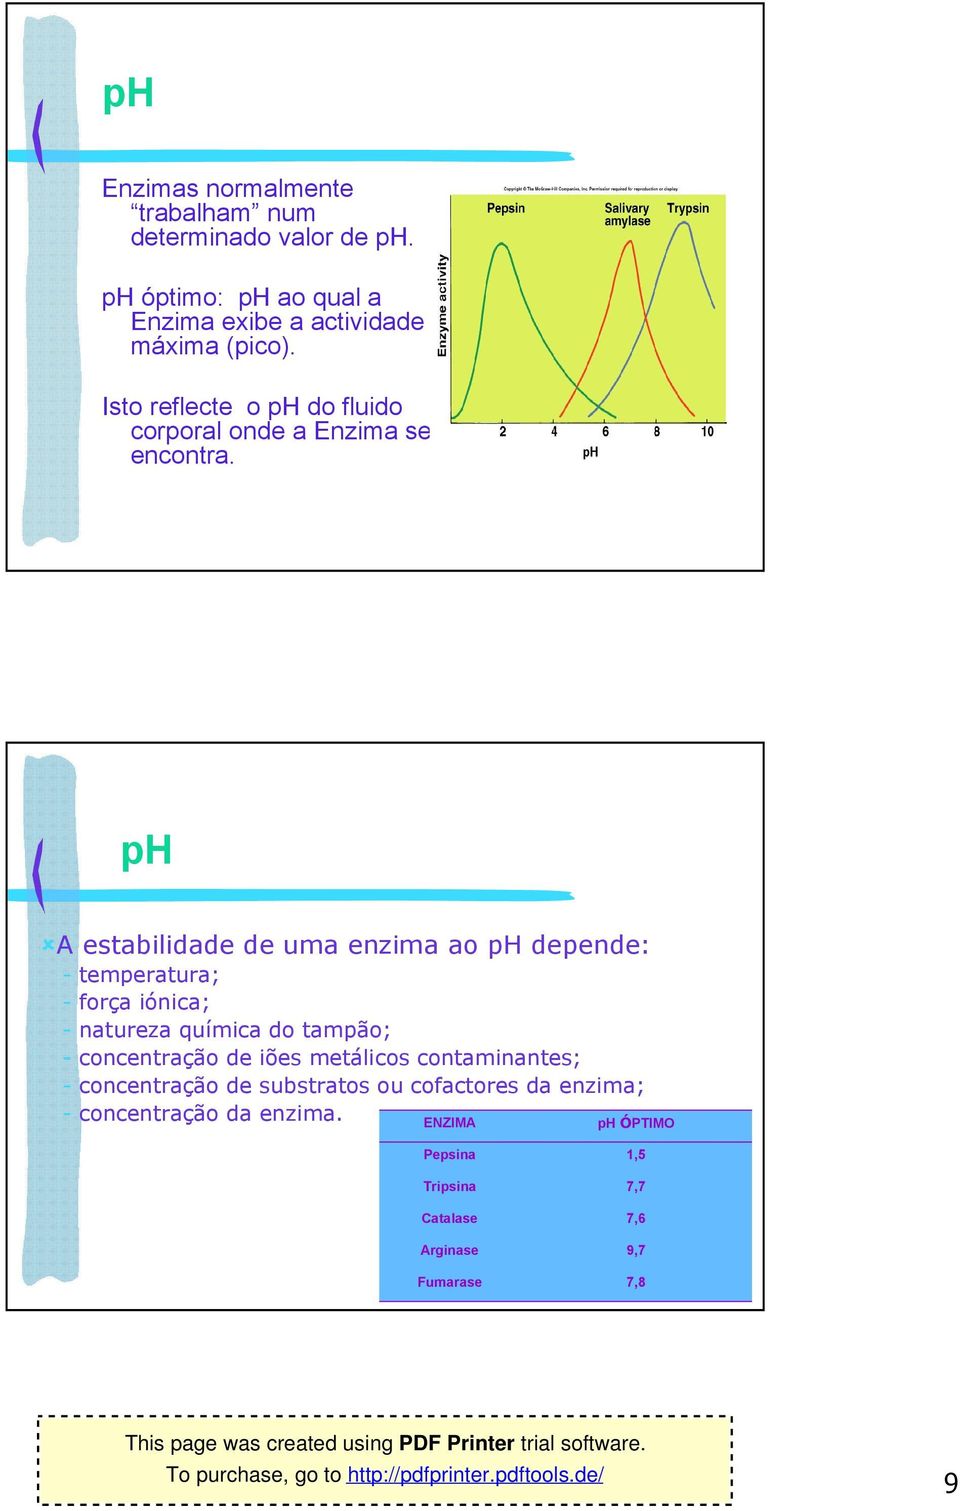 ph A estabilidade de uma enzima ao ph depende: - temperatura; - força iónica; - natureza química do tampão; - concentração de